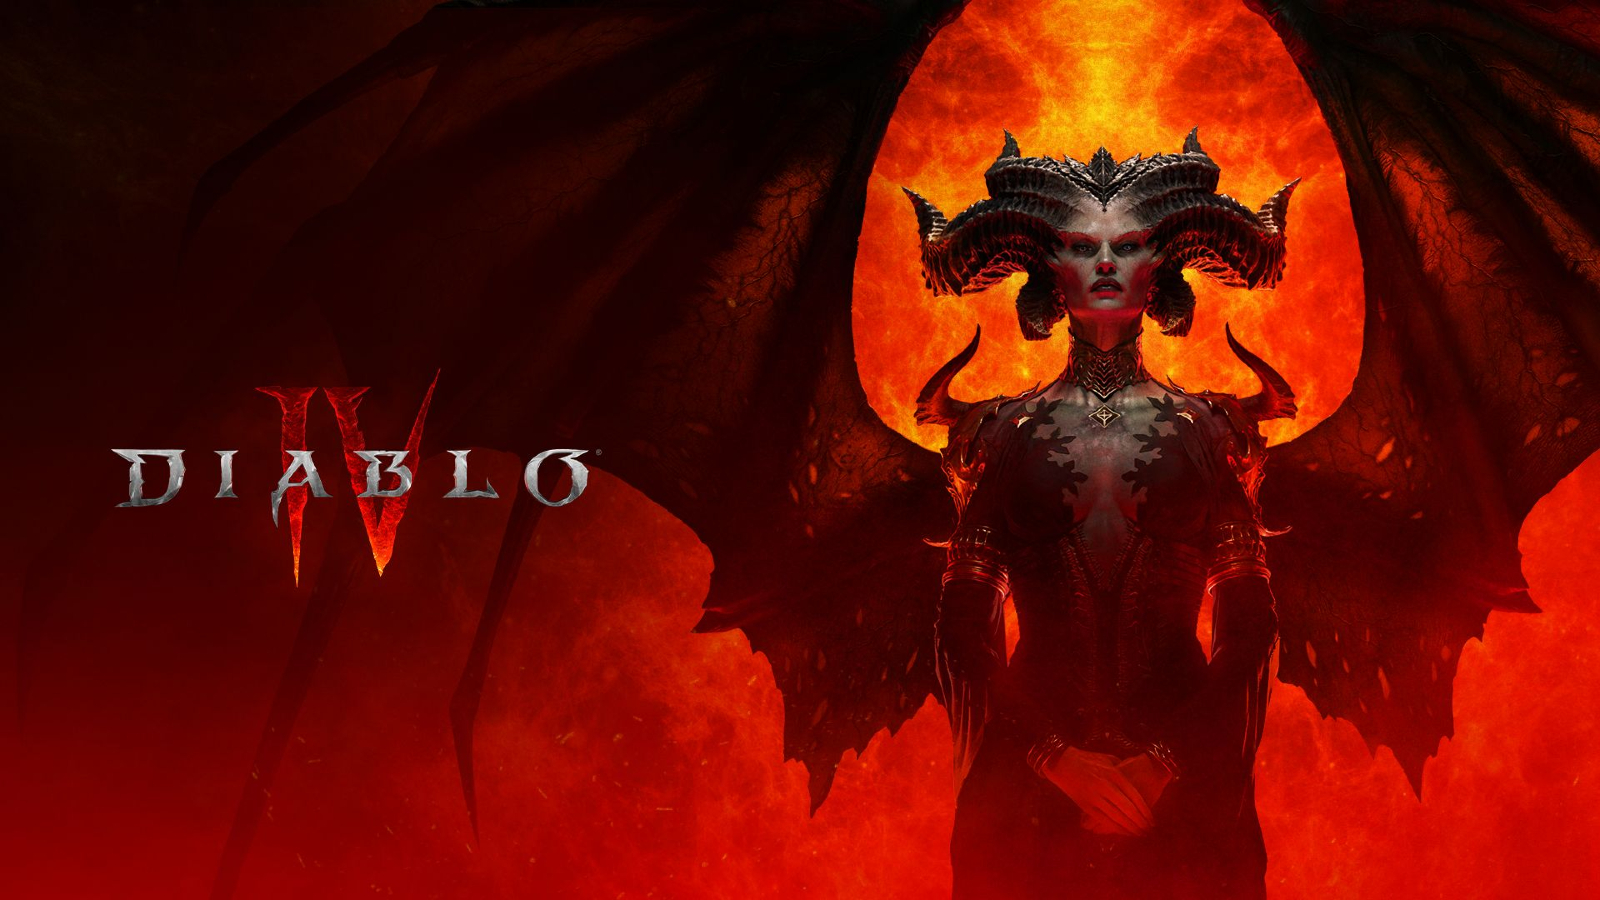 يقول لاعبو Diablo 4 إن الحصول على الأشياء الجيدة هو “وظيفة بدوام كامل”.